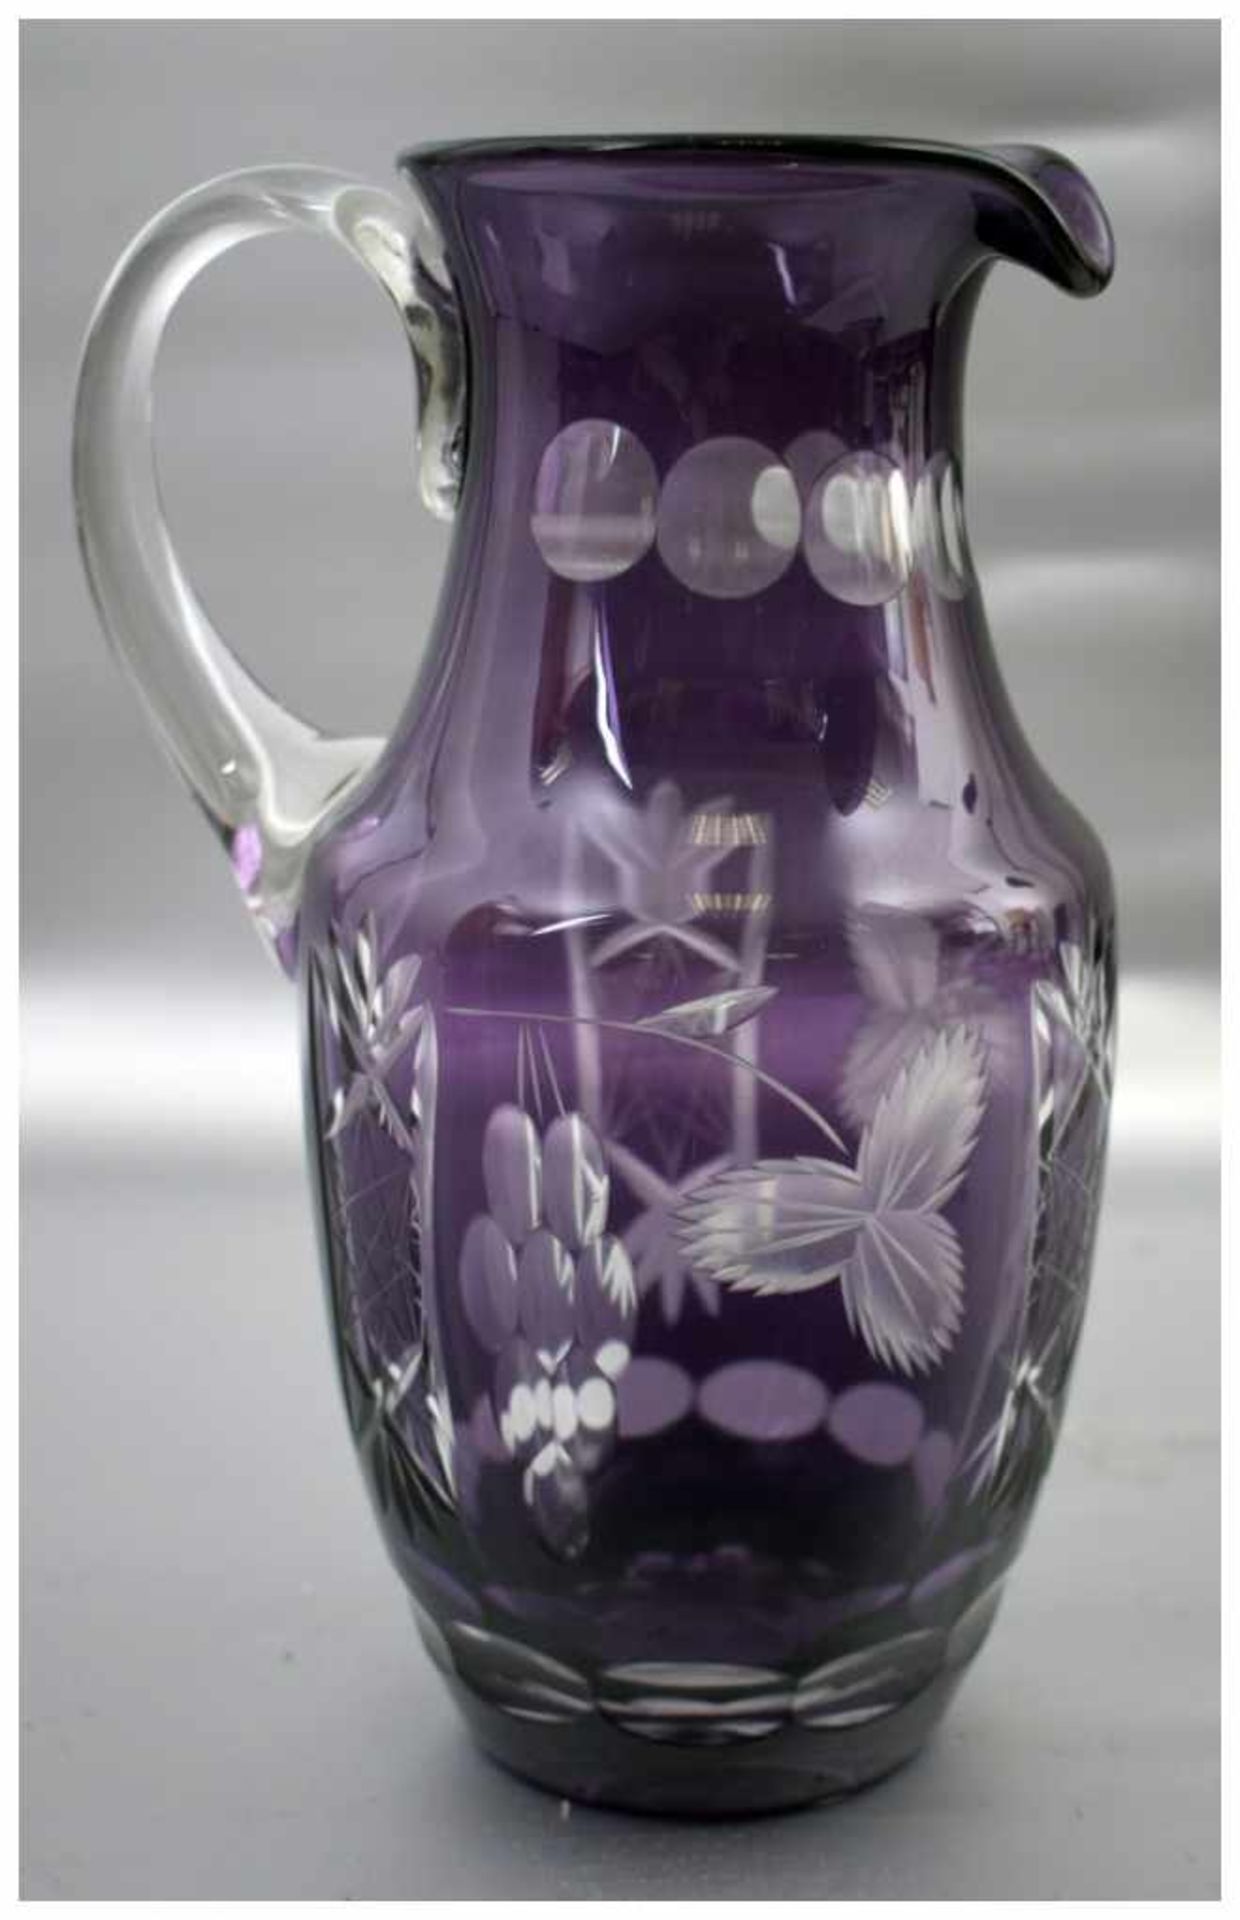 Krug farbl. Glas, geschliffen verziert, mit lilafarbenem Überfang, H 23 cm